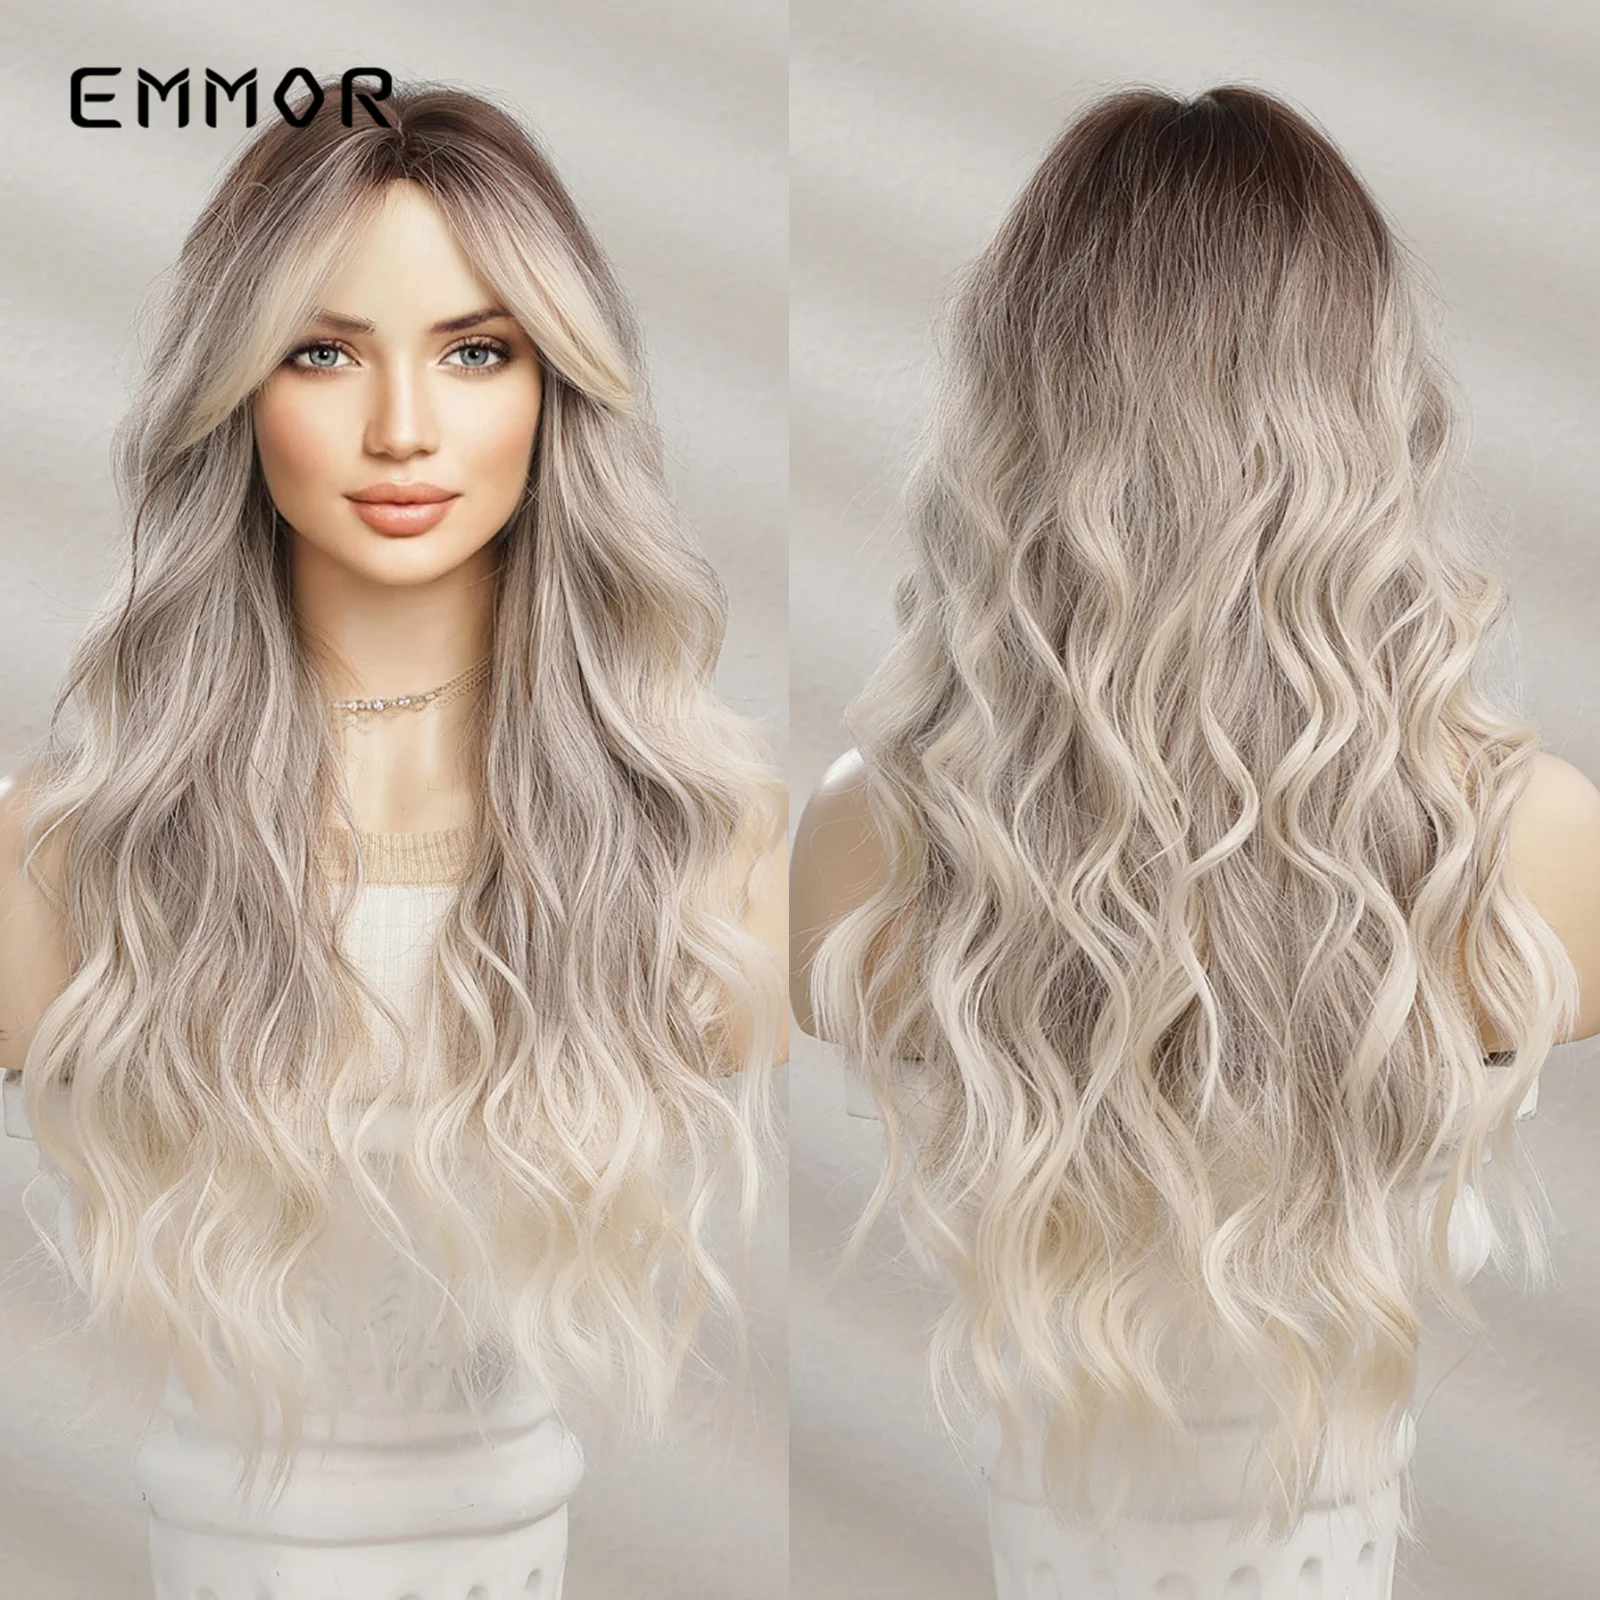 Emmor Ombre Коричневый Блондин, Длинные Прямые синтетические парики с челкой, Косплей-парик для женщин, высококачественные Натуральные искусственные волосы